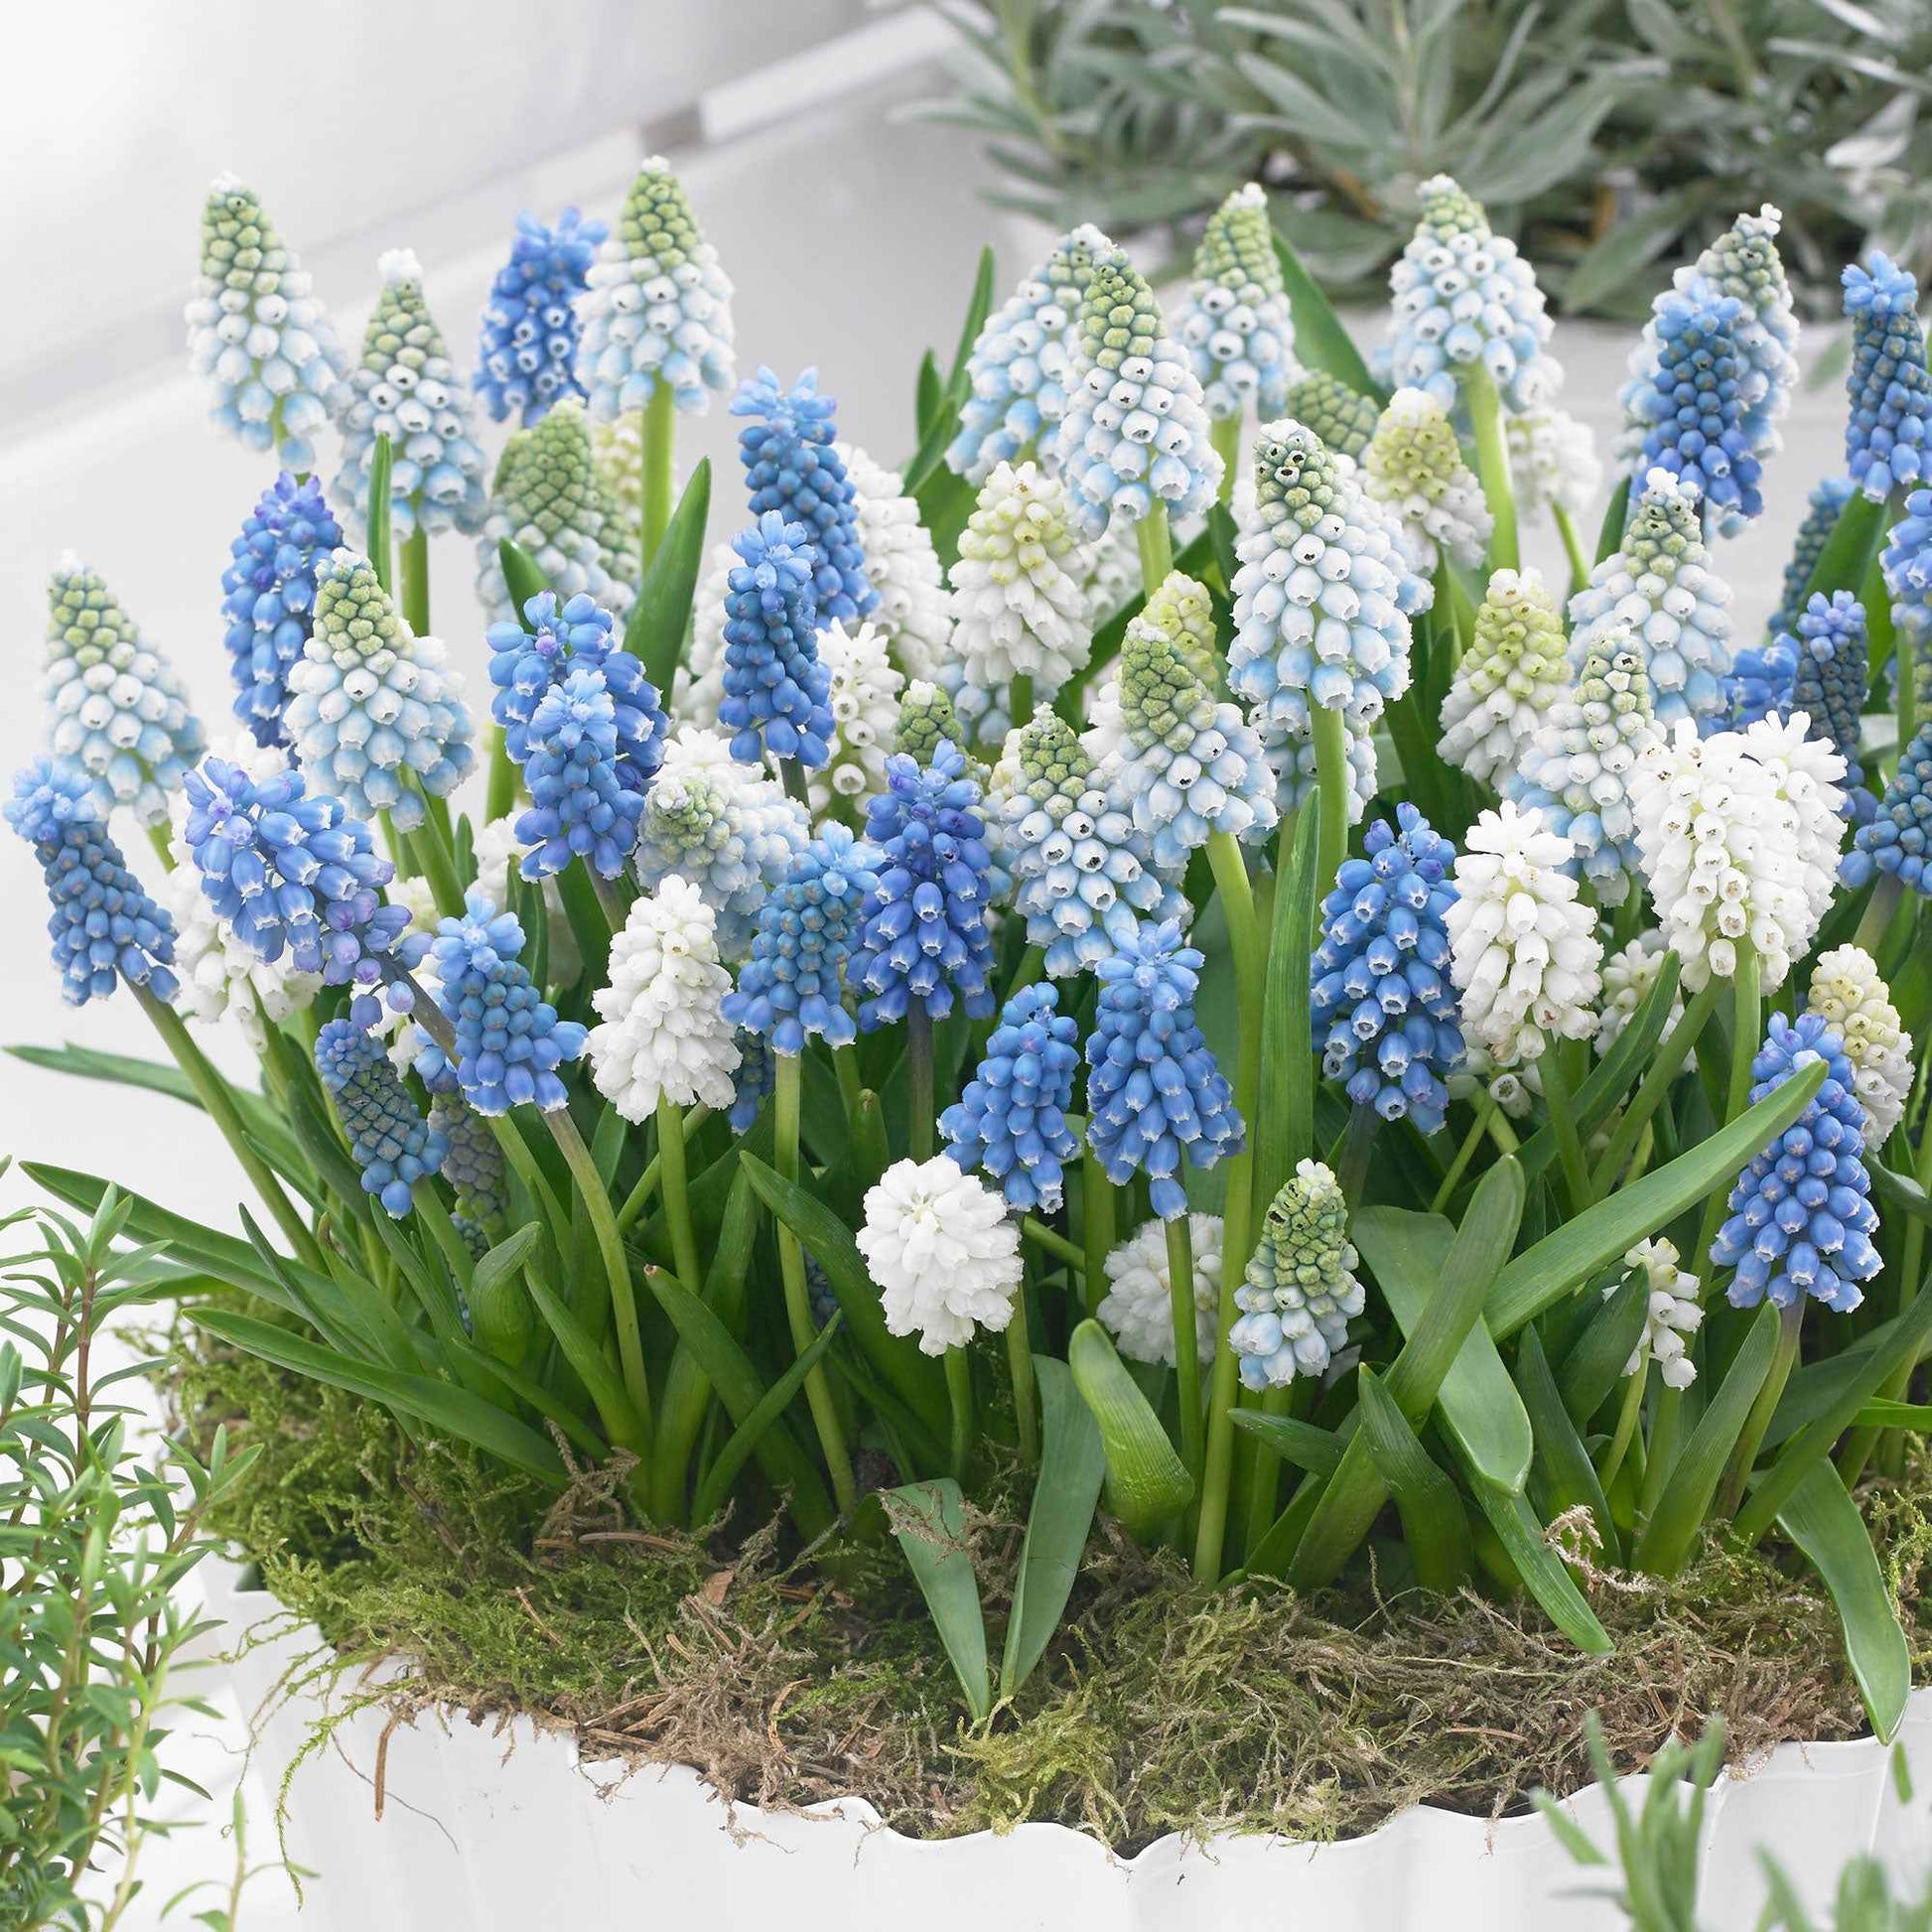 50x Blauwe + witte druifjes Muscari - Mix Spring Hill Blend blauw-wit - Bijvriendelijke bloembollen